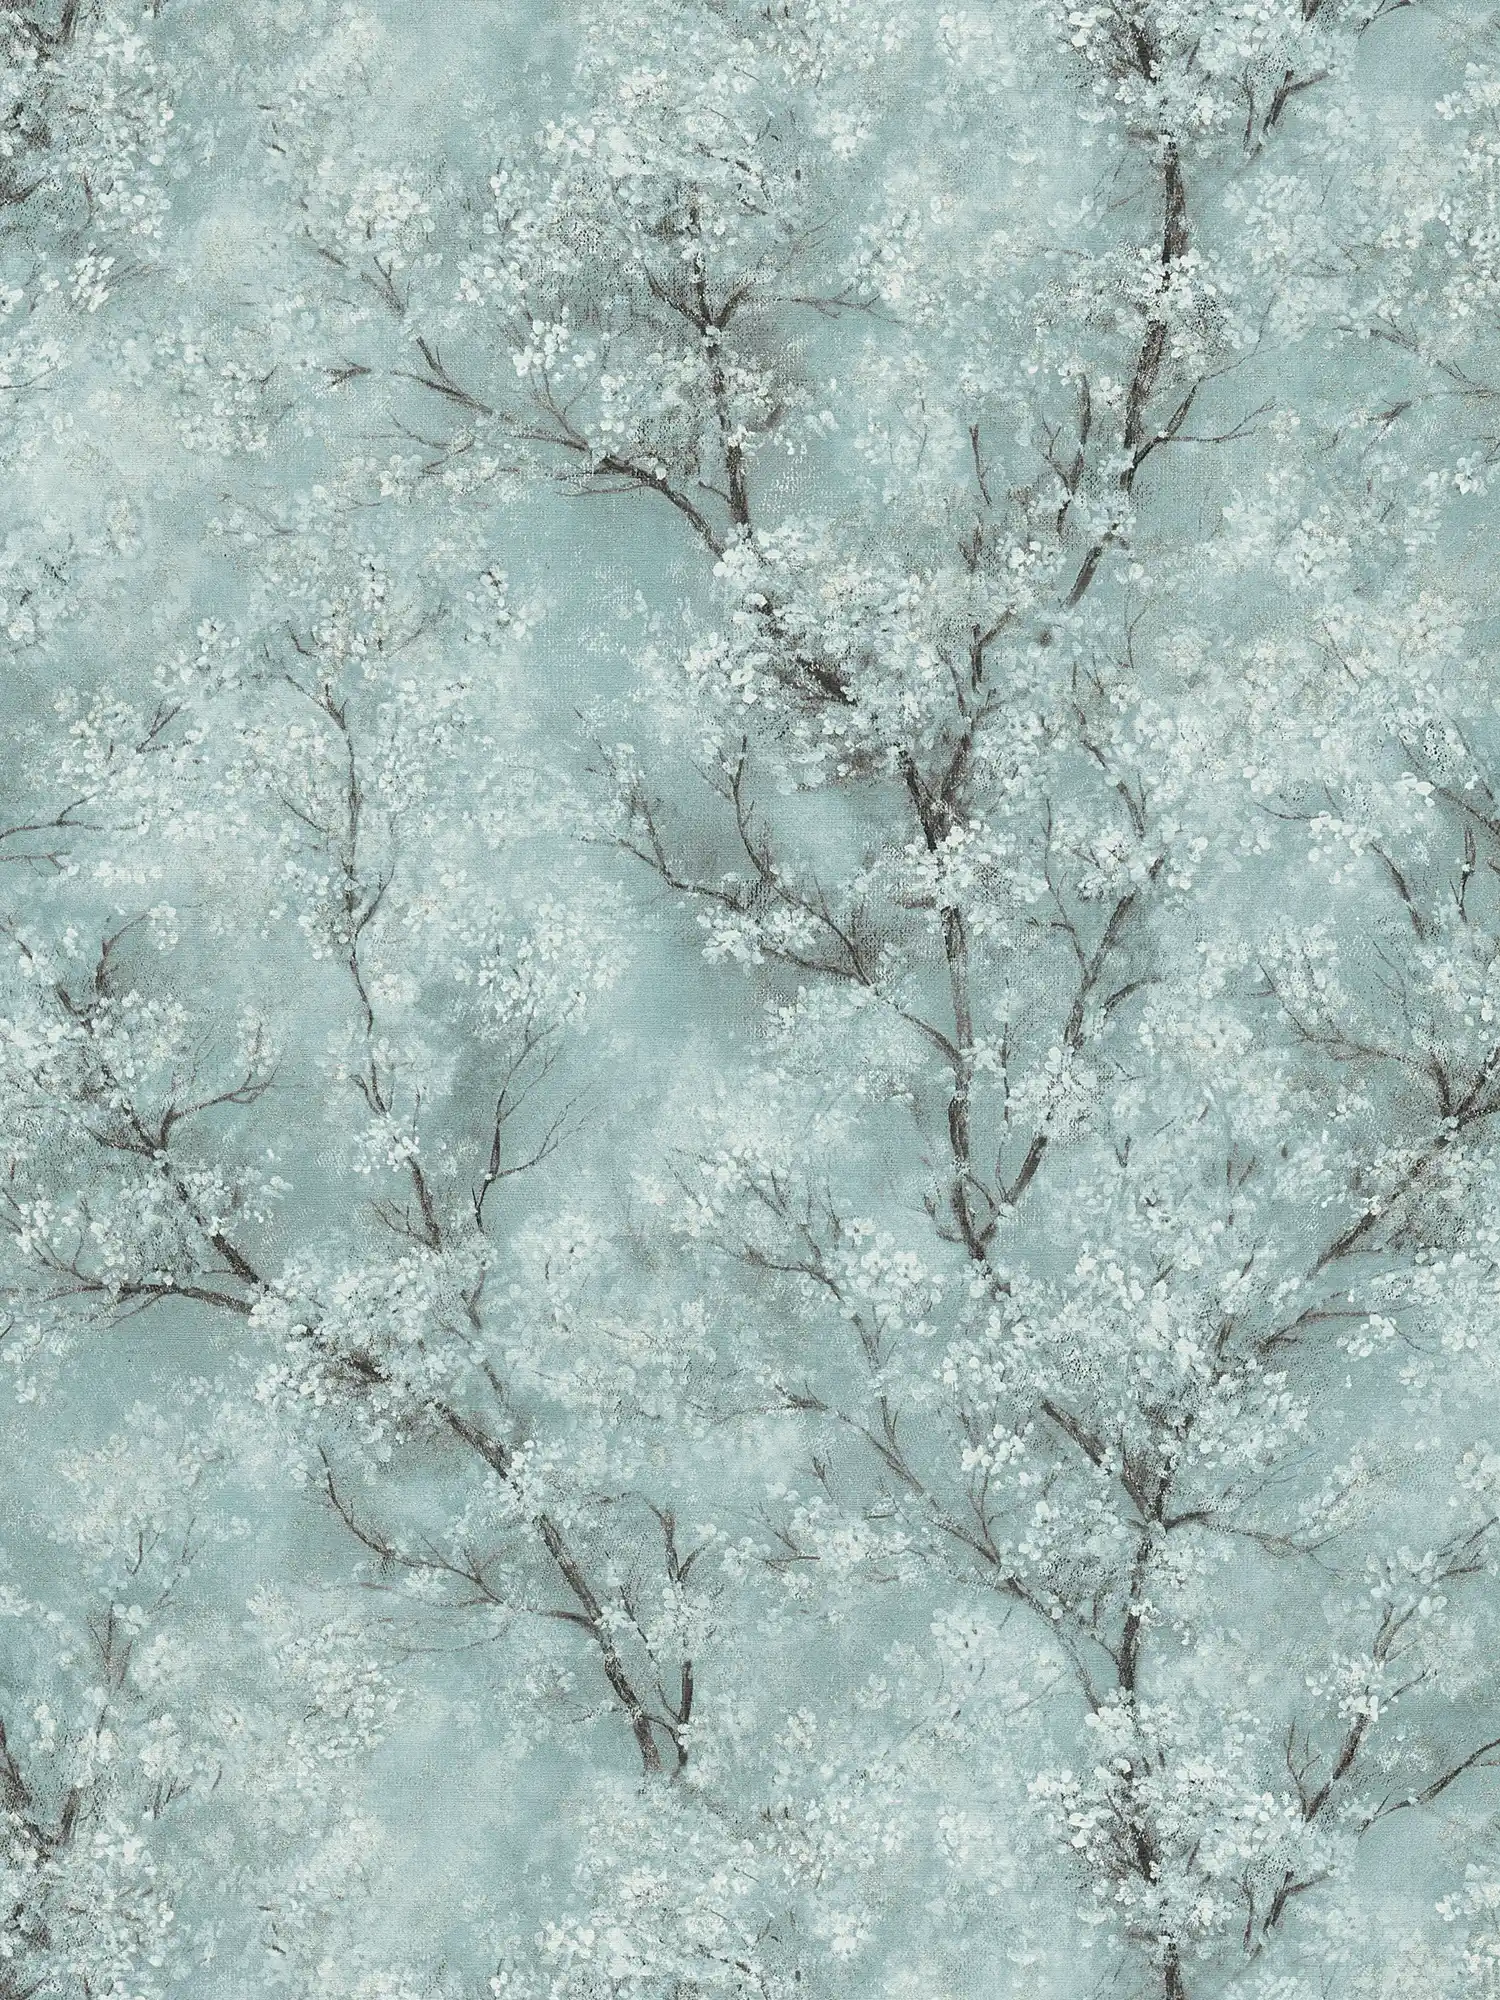         wallpaper cherry blossoms glitter effect - green, blue, grey
    